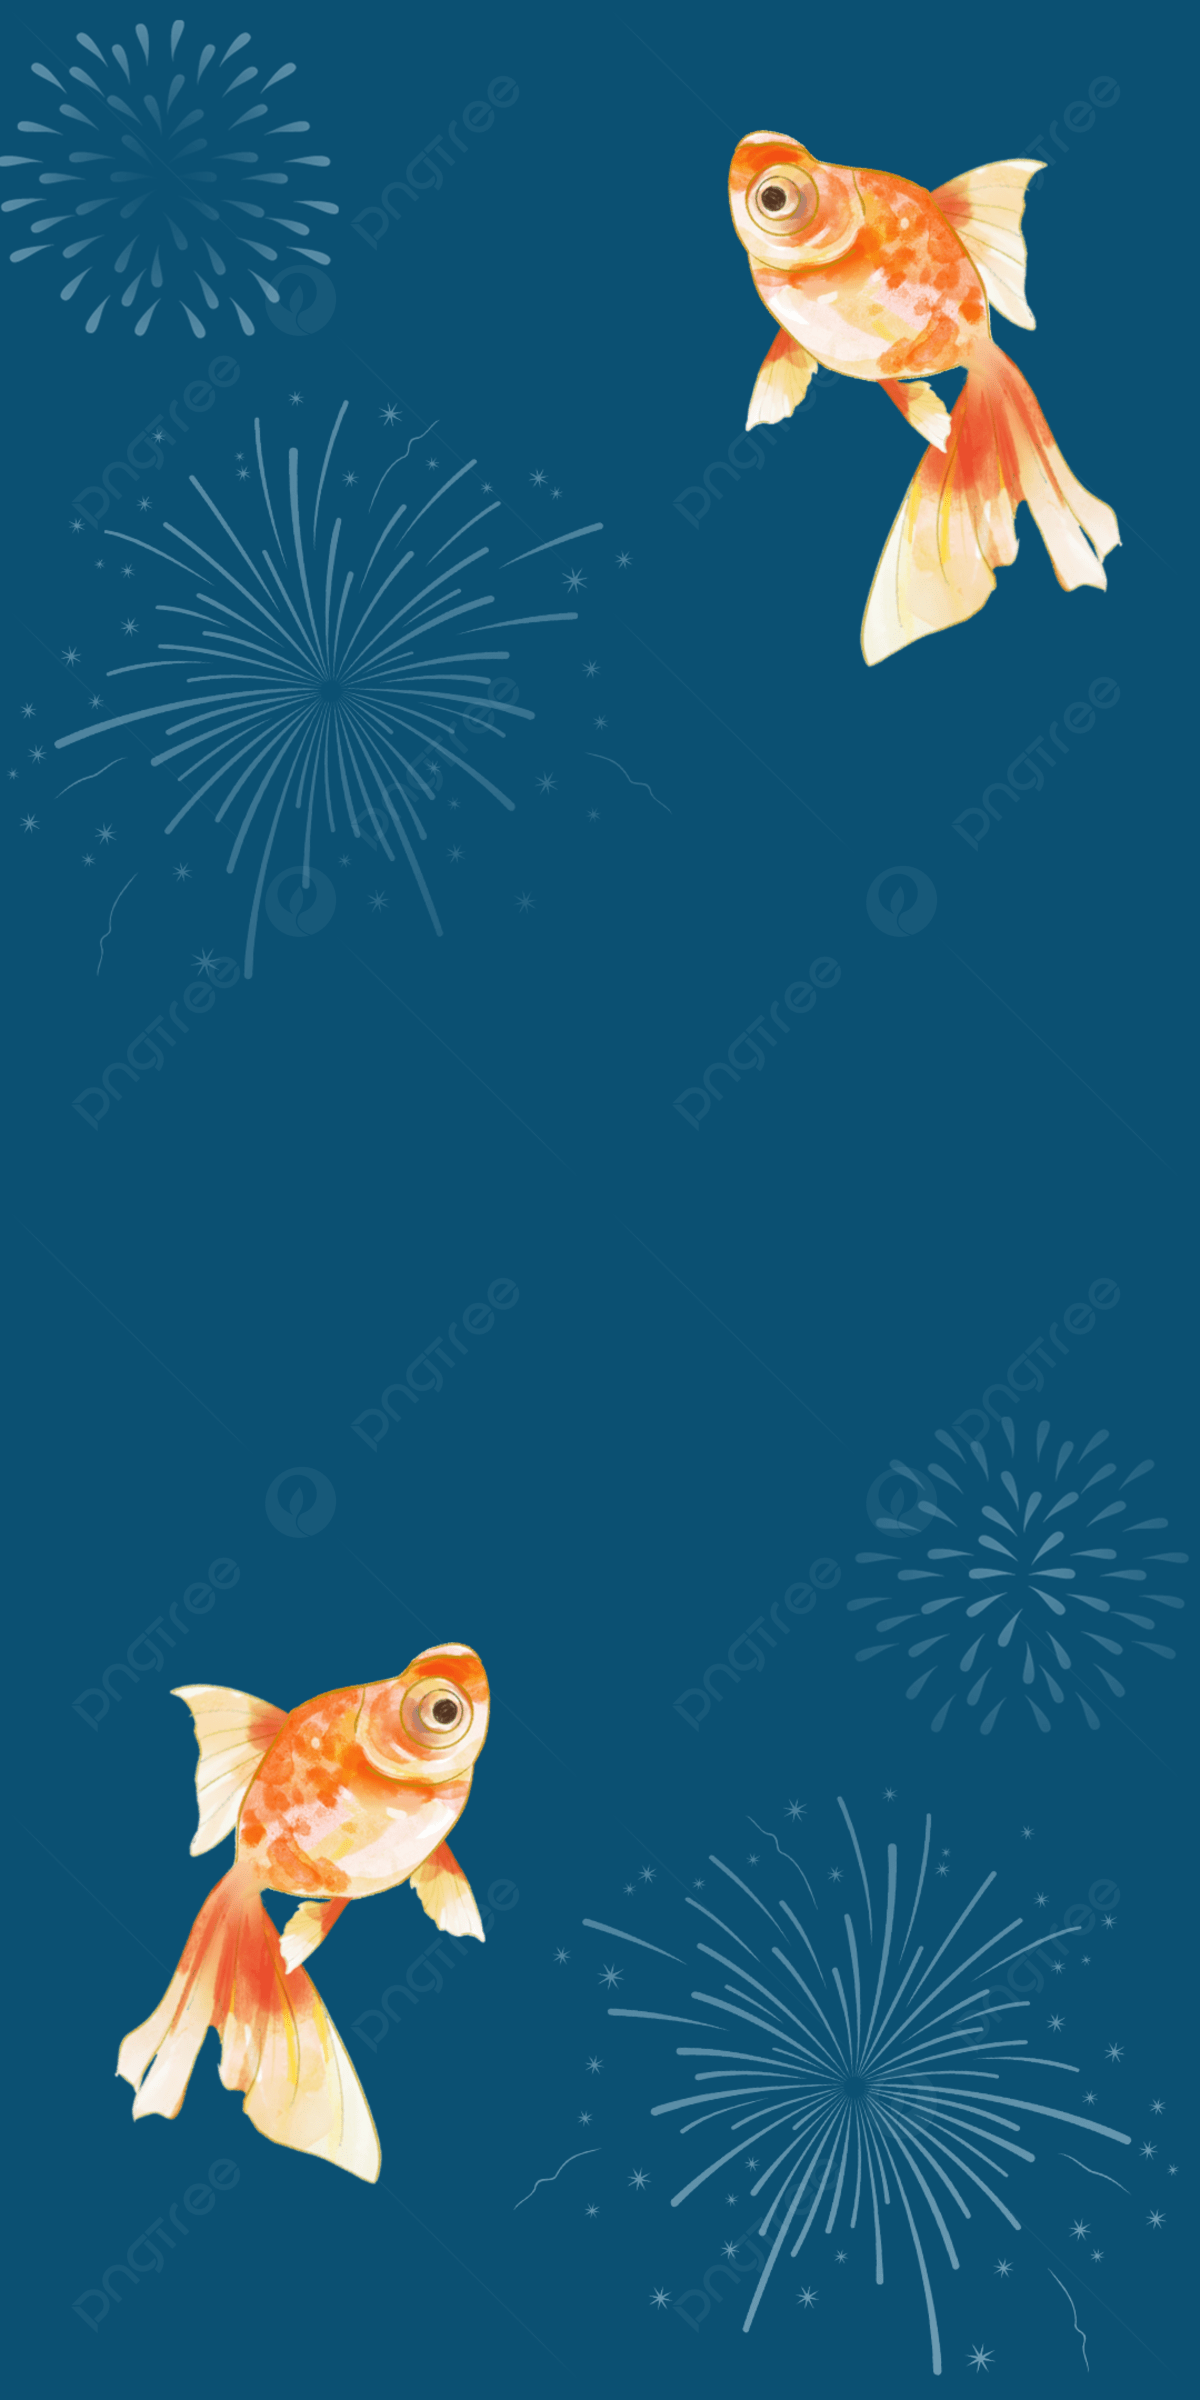 Japanese Bon Festival Firework Koi Background Wallpaper Image For Free Download